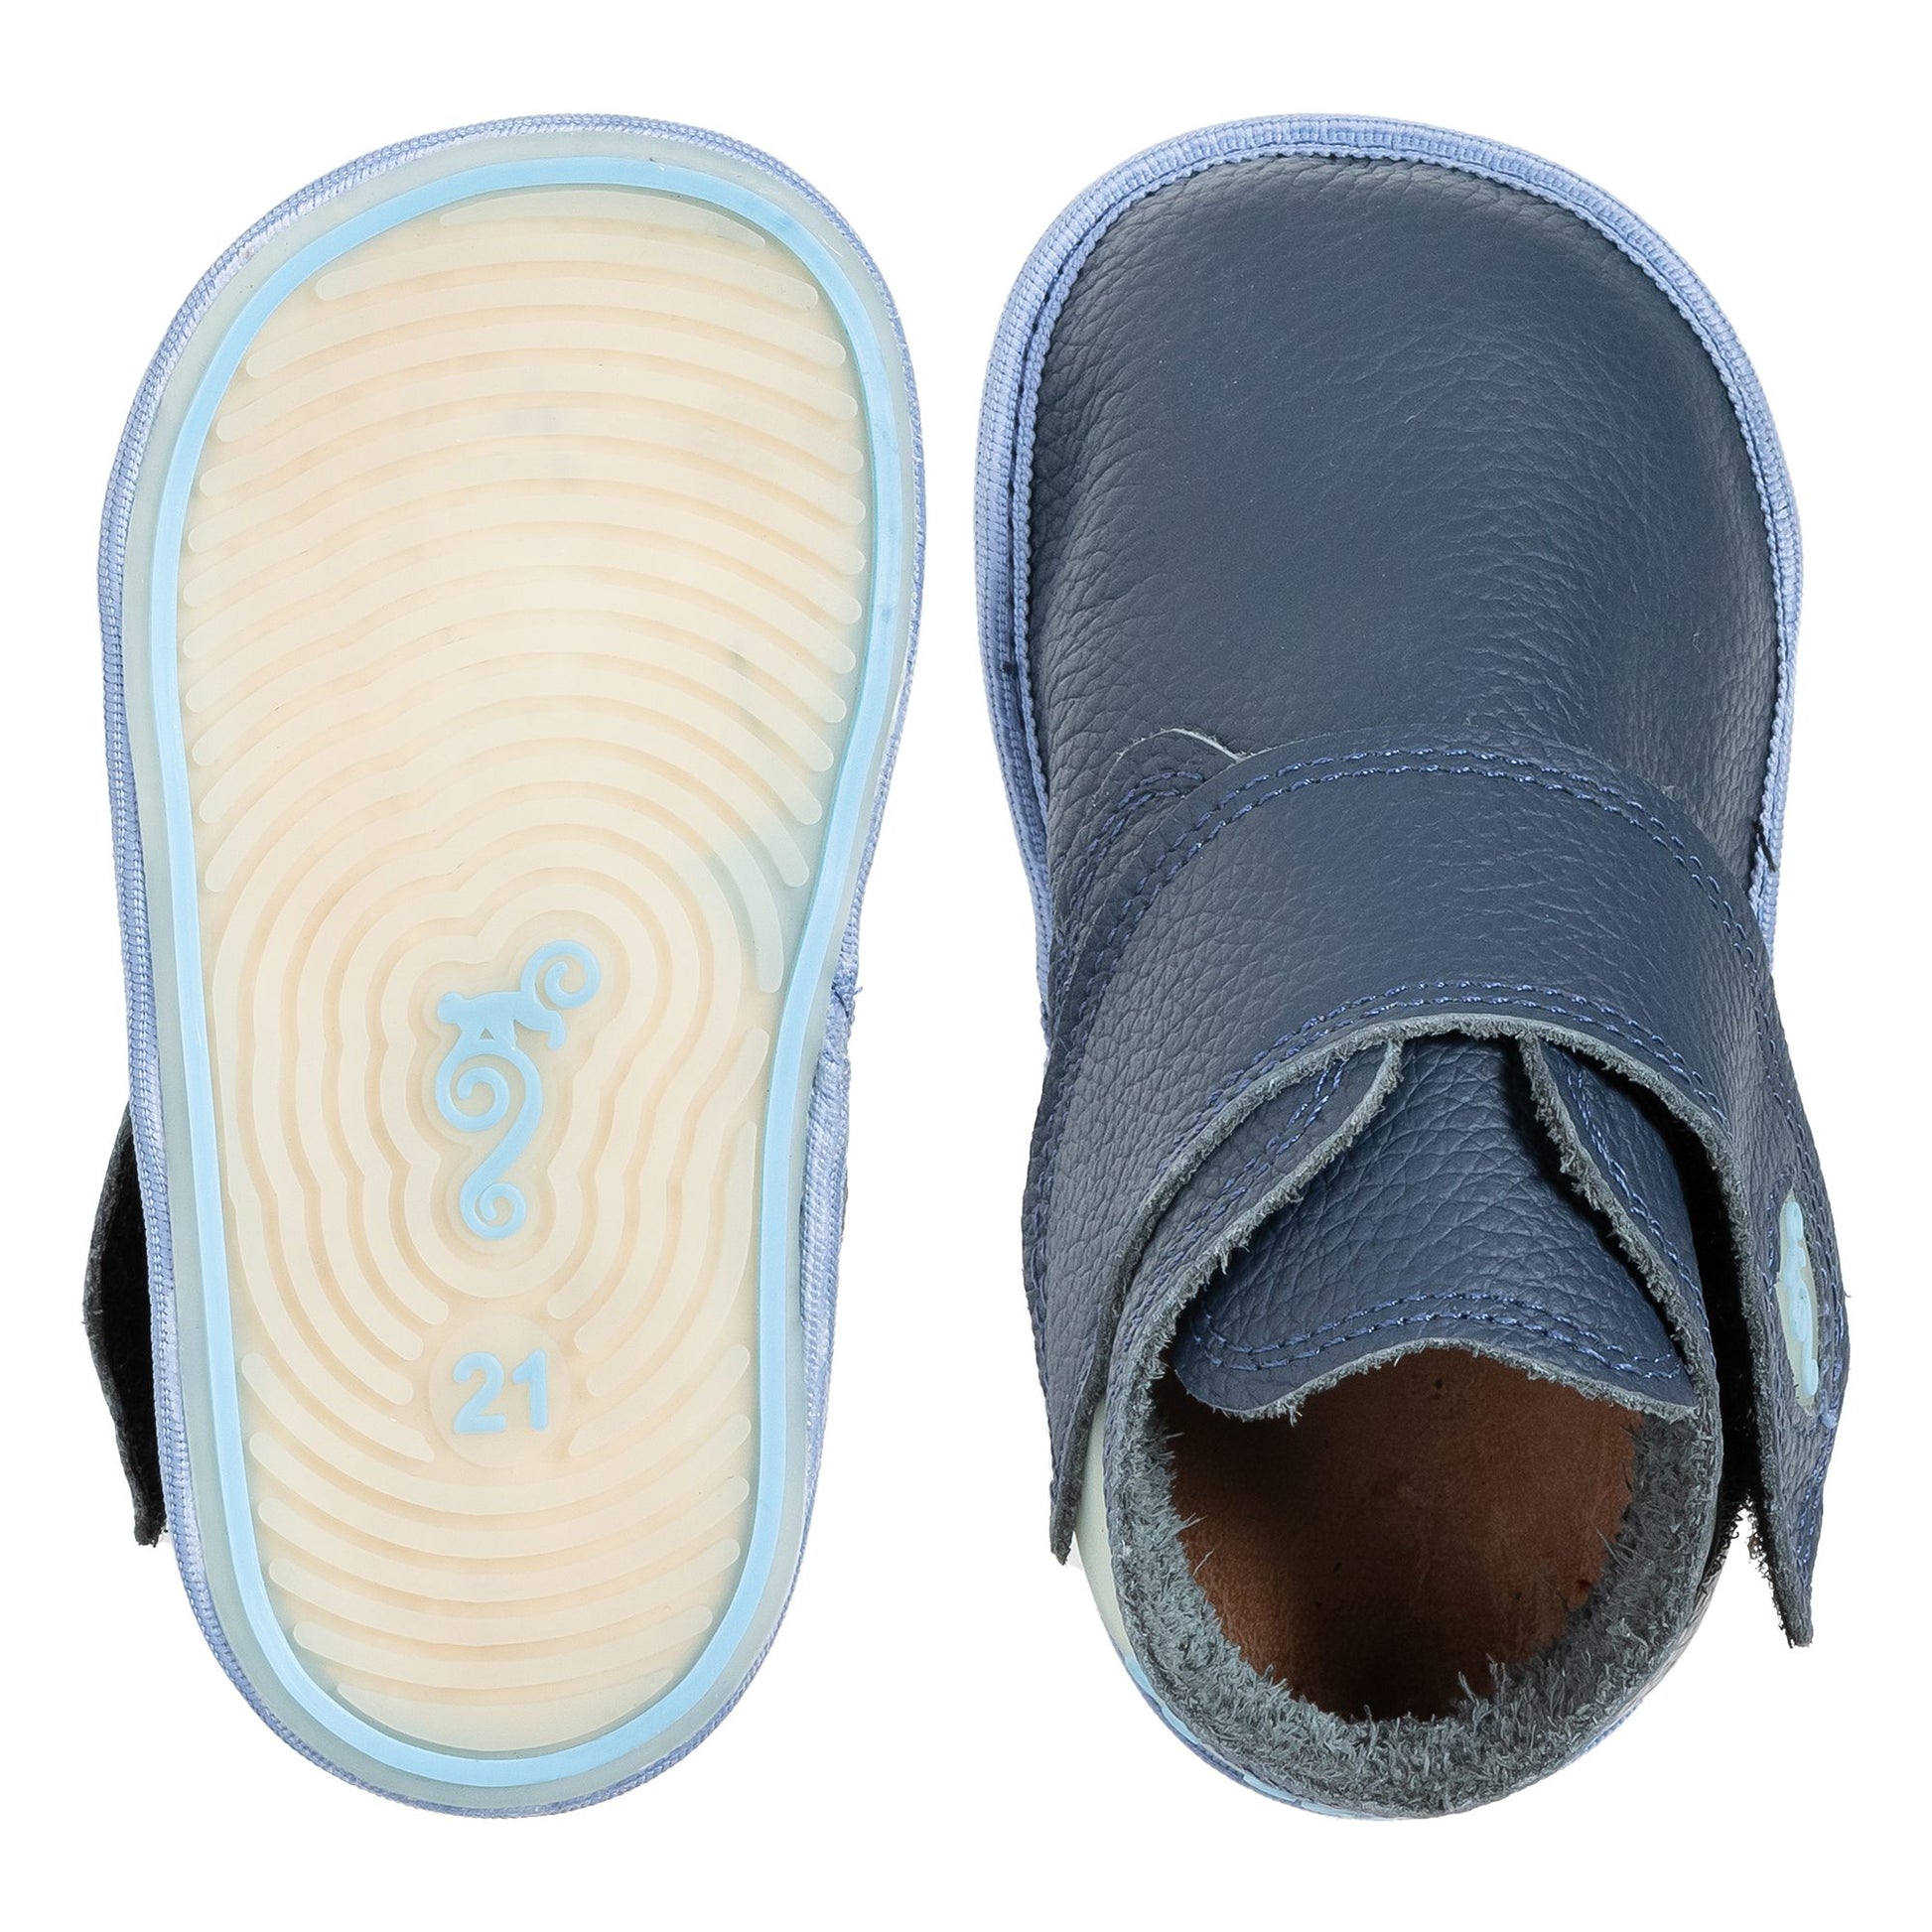 Calzado Respetuoso Unisex Magical Shoes Explorer Hot Sun - Deditos